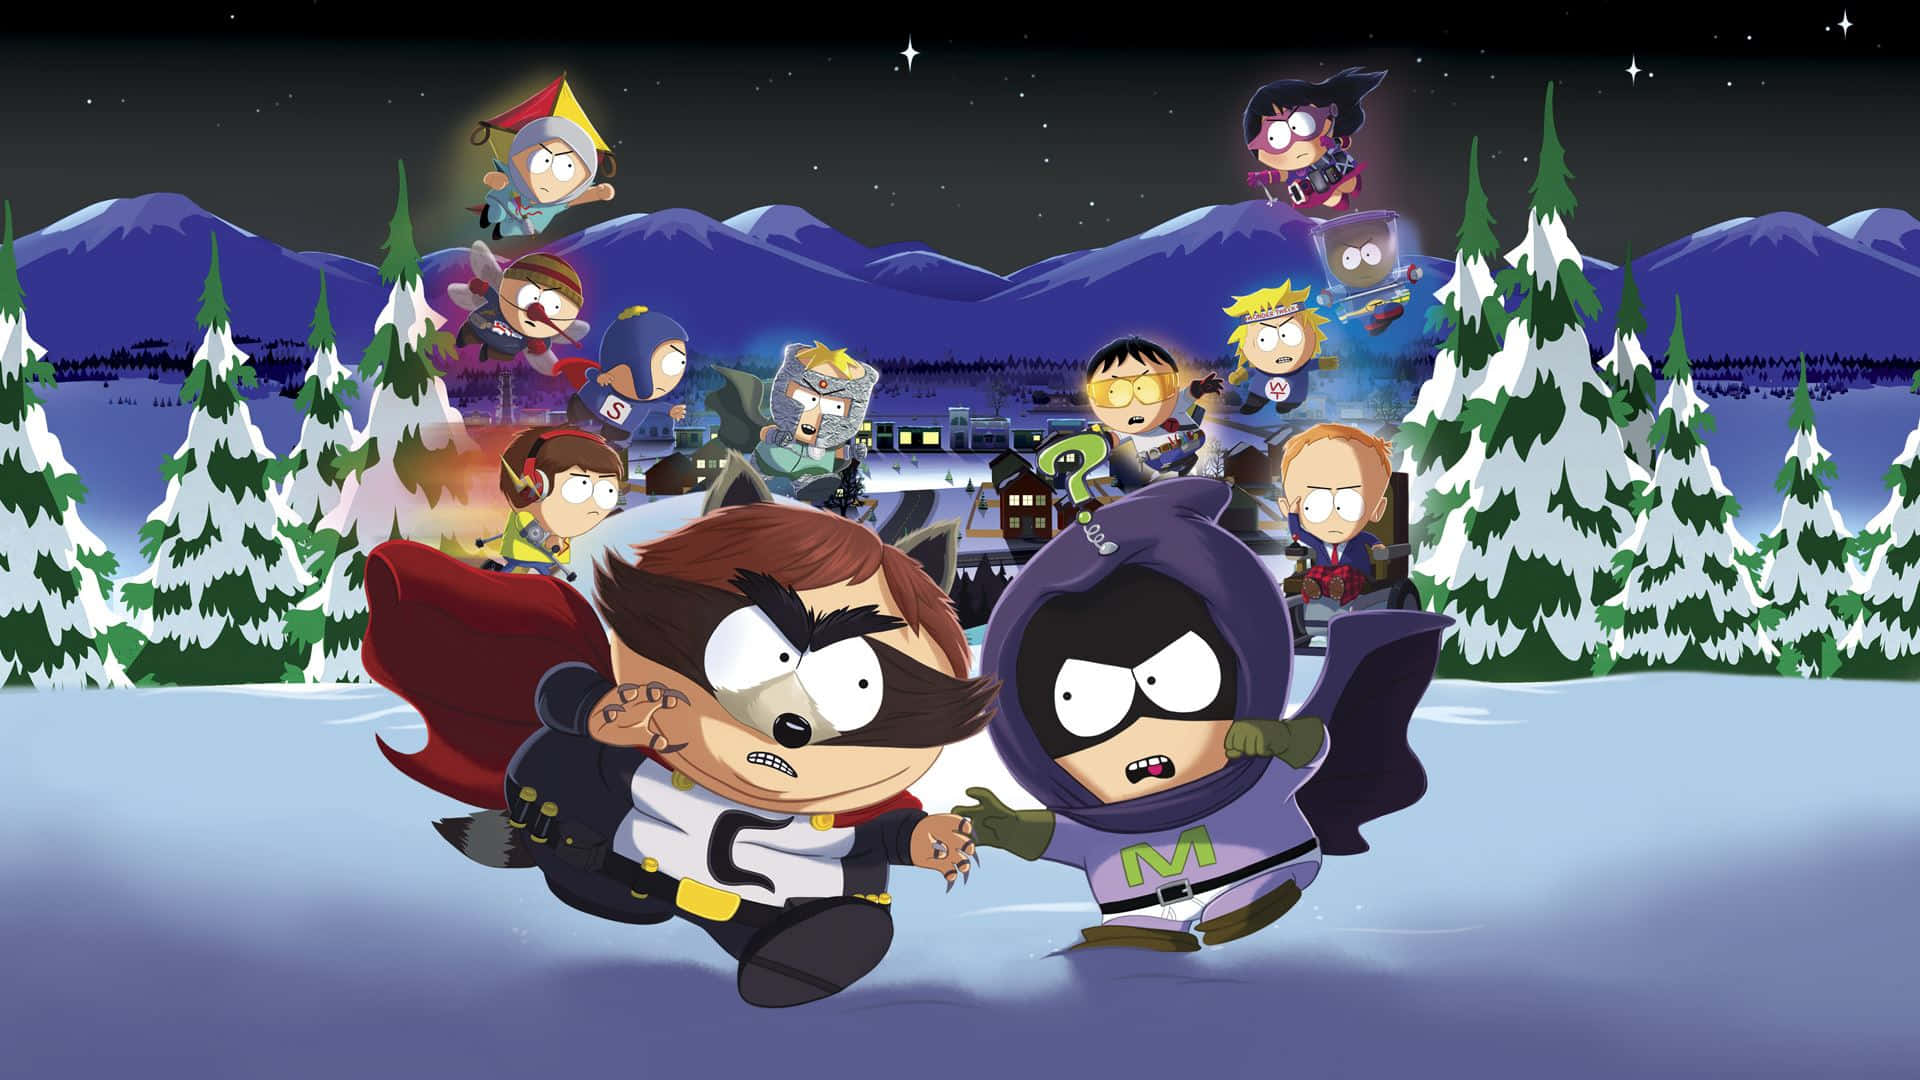 Begleitedie Hauptfiguren Von South Park In Ihren Alltäglichen Abenteuern.